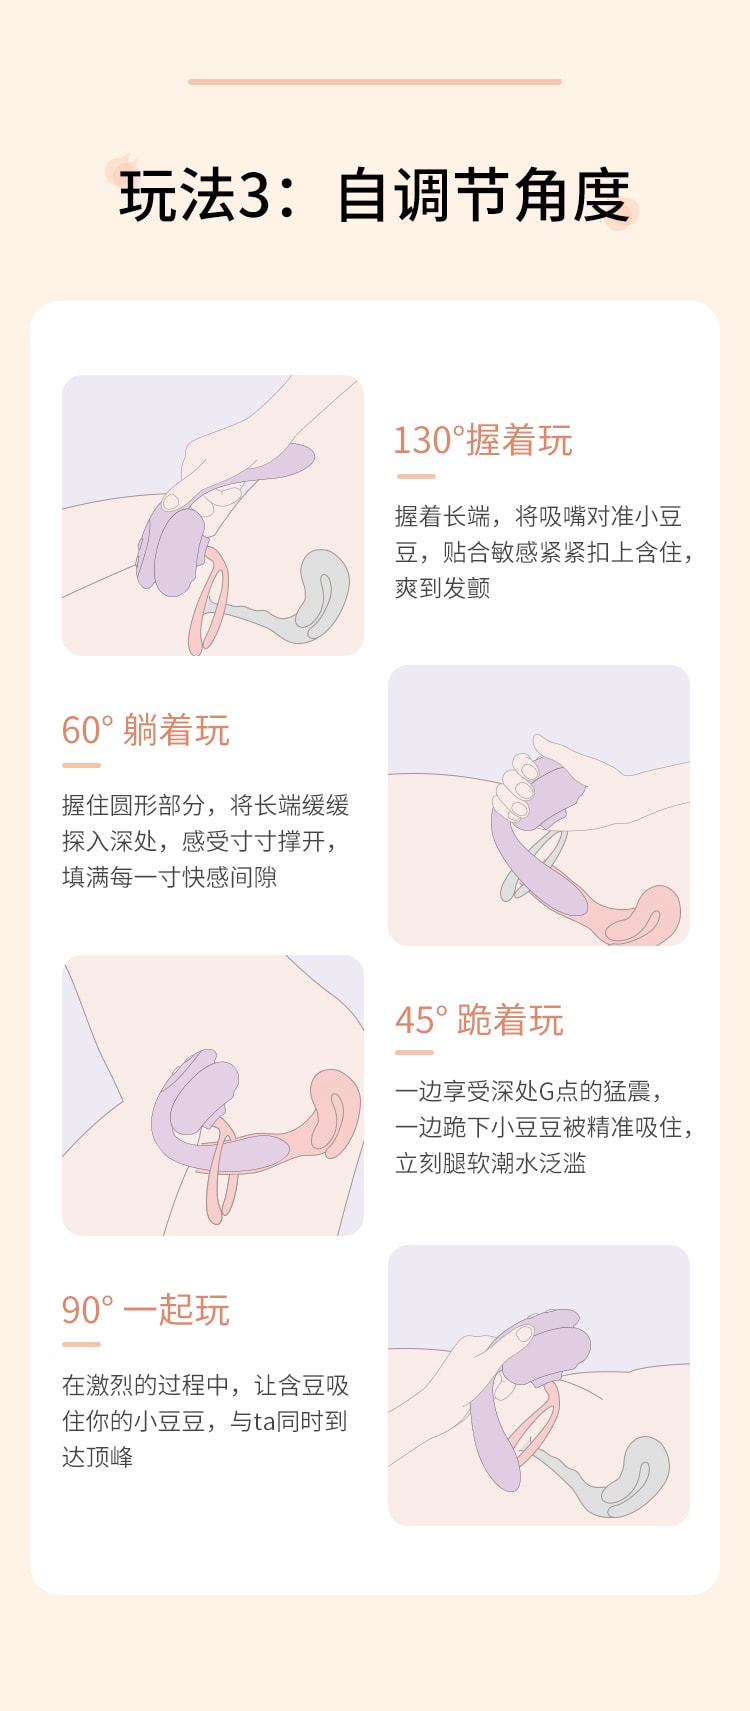 中国 Mesanel享要含豆振动震动棒女性成人用品自慰器女情趣玩具秒潮高潮性用具 1件